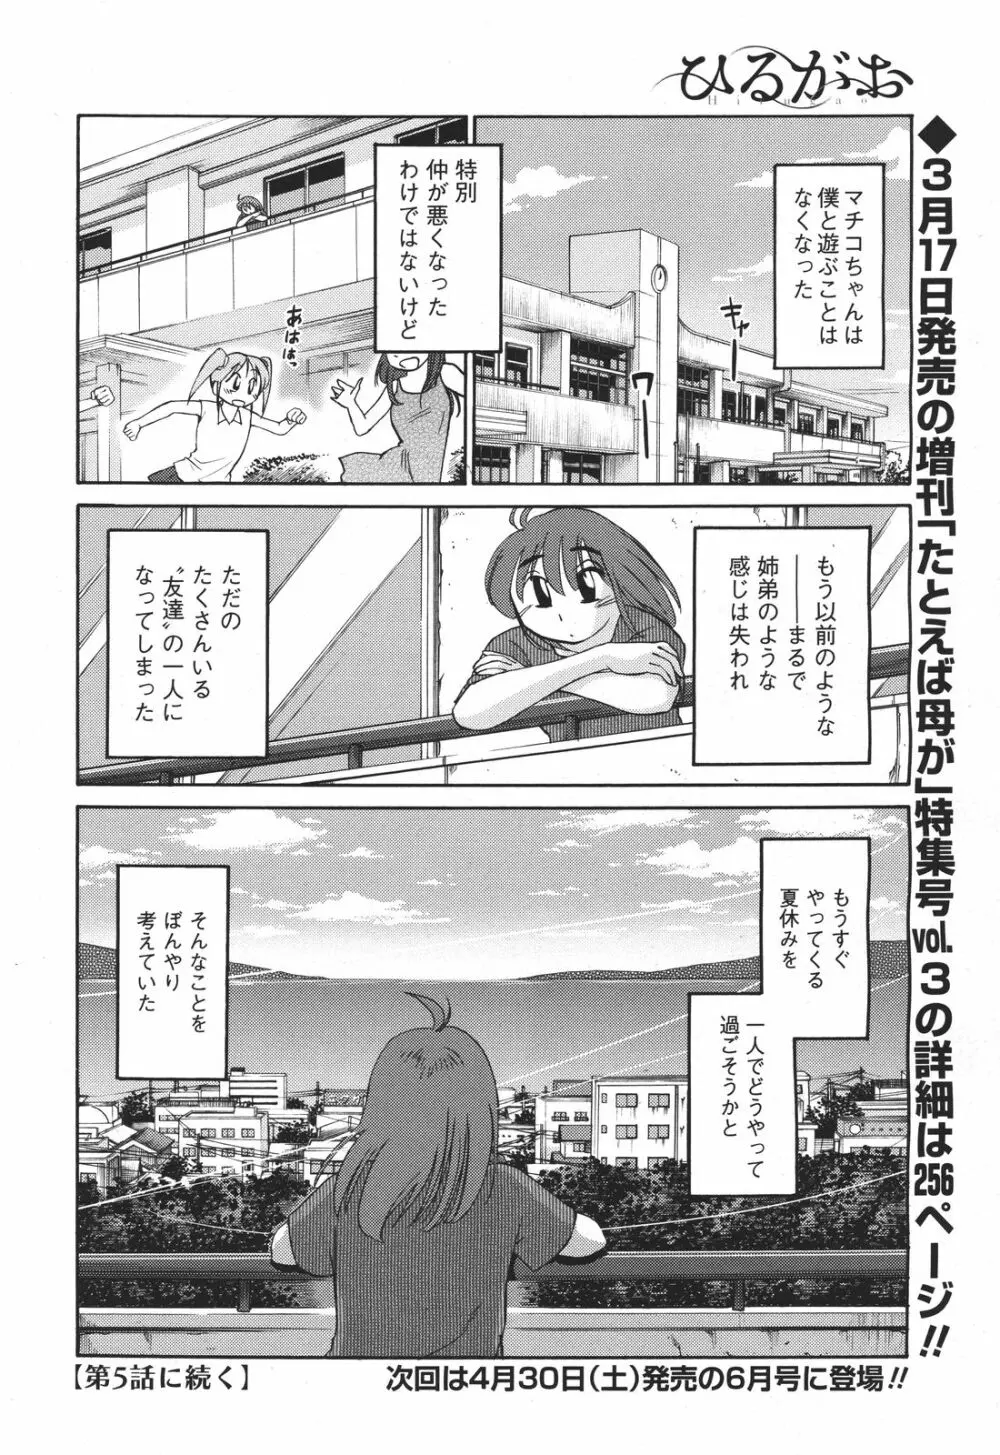 [Tsuya Tsuya] Hirugao Ch.01-02+04+14-26 61ページ